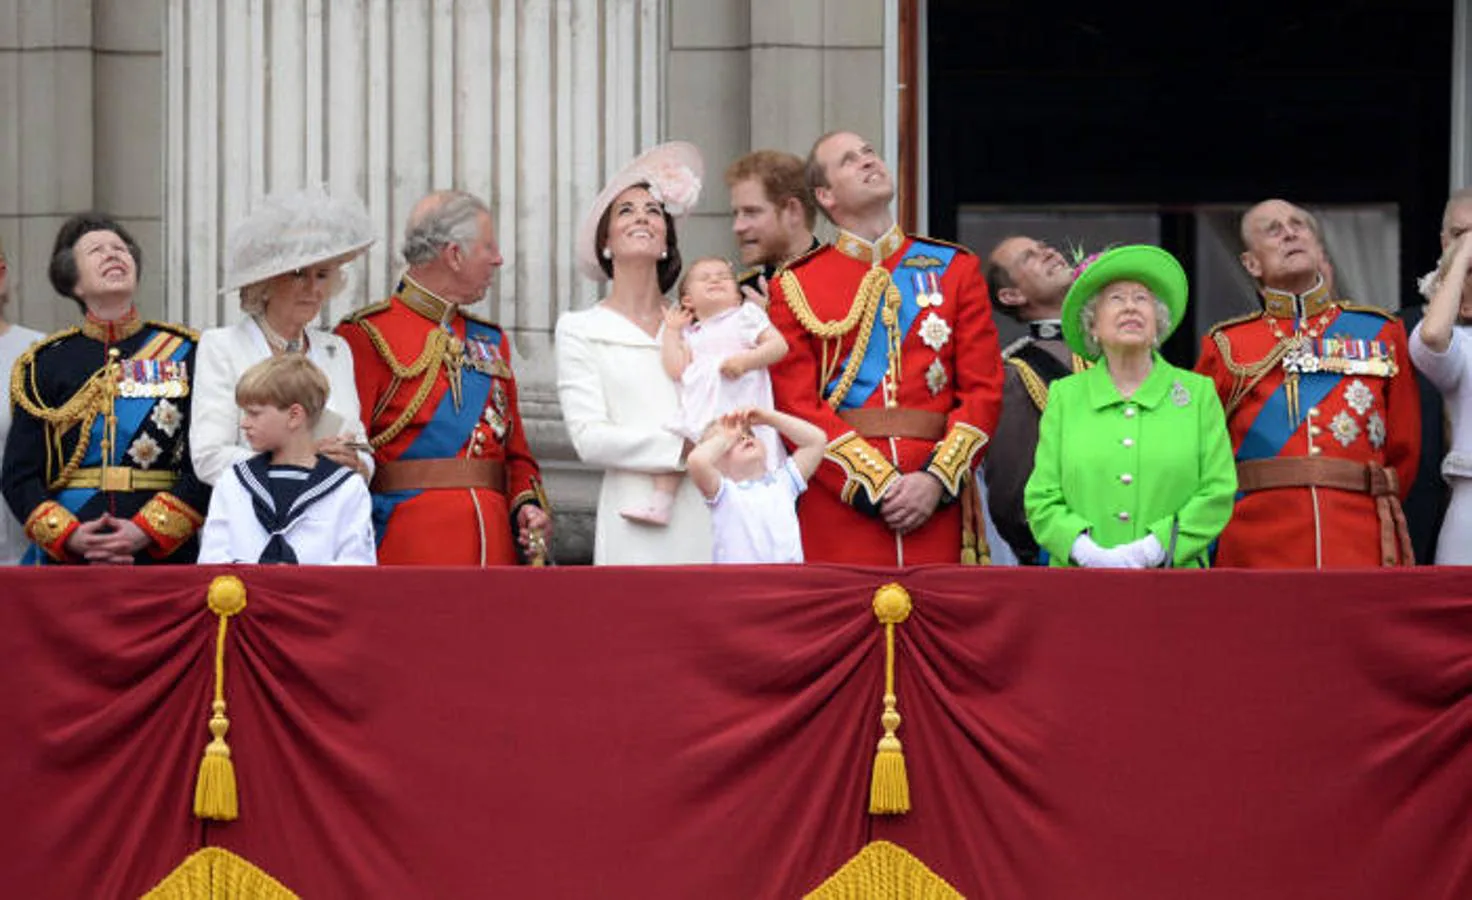 2016. Junto al resto de la Familia Real en el «Trooping The Colour»: desfile militar que se produce cada año desde 1748 para celebrar el cumpleaños oficial de su madre, la Reina Isabel II